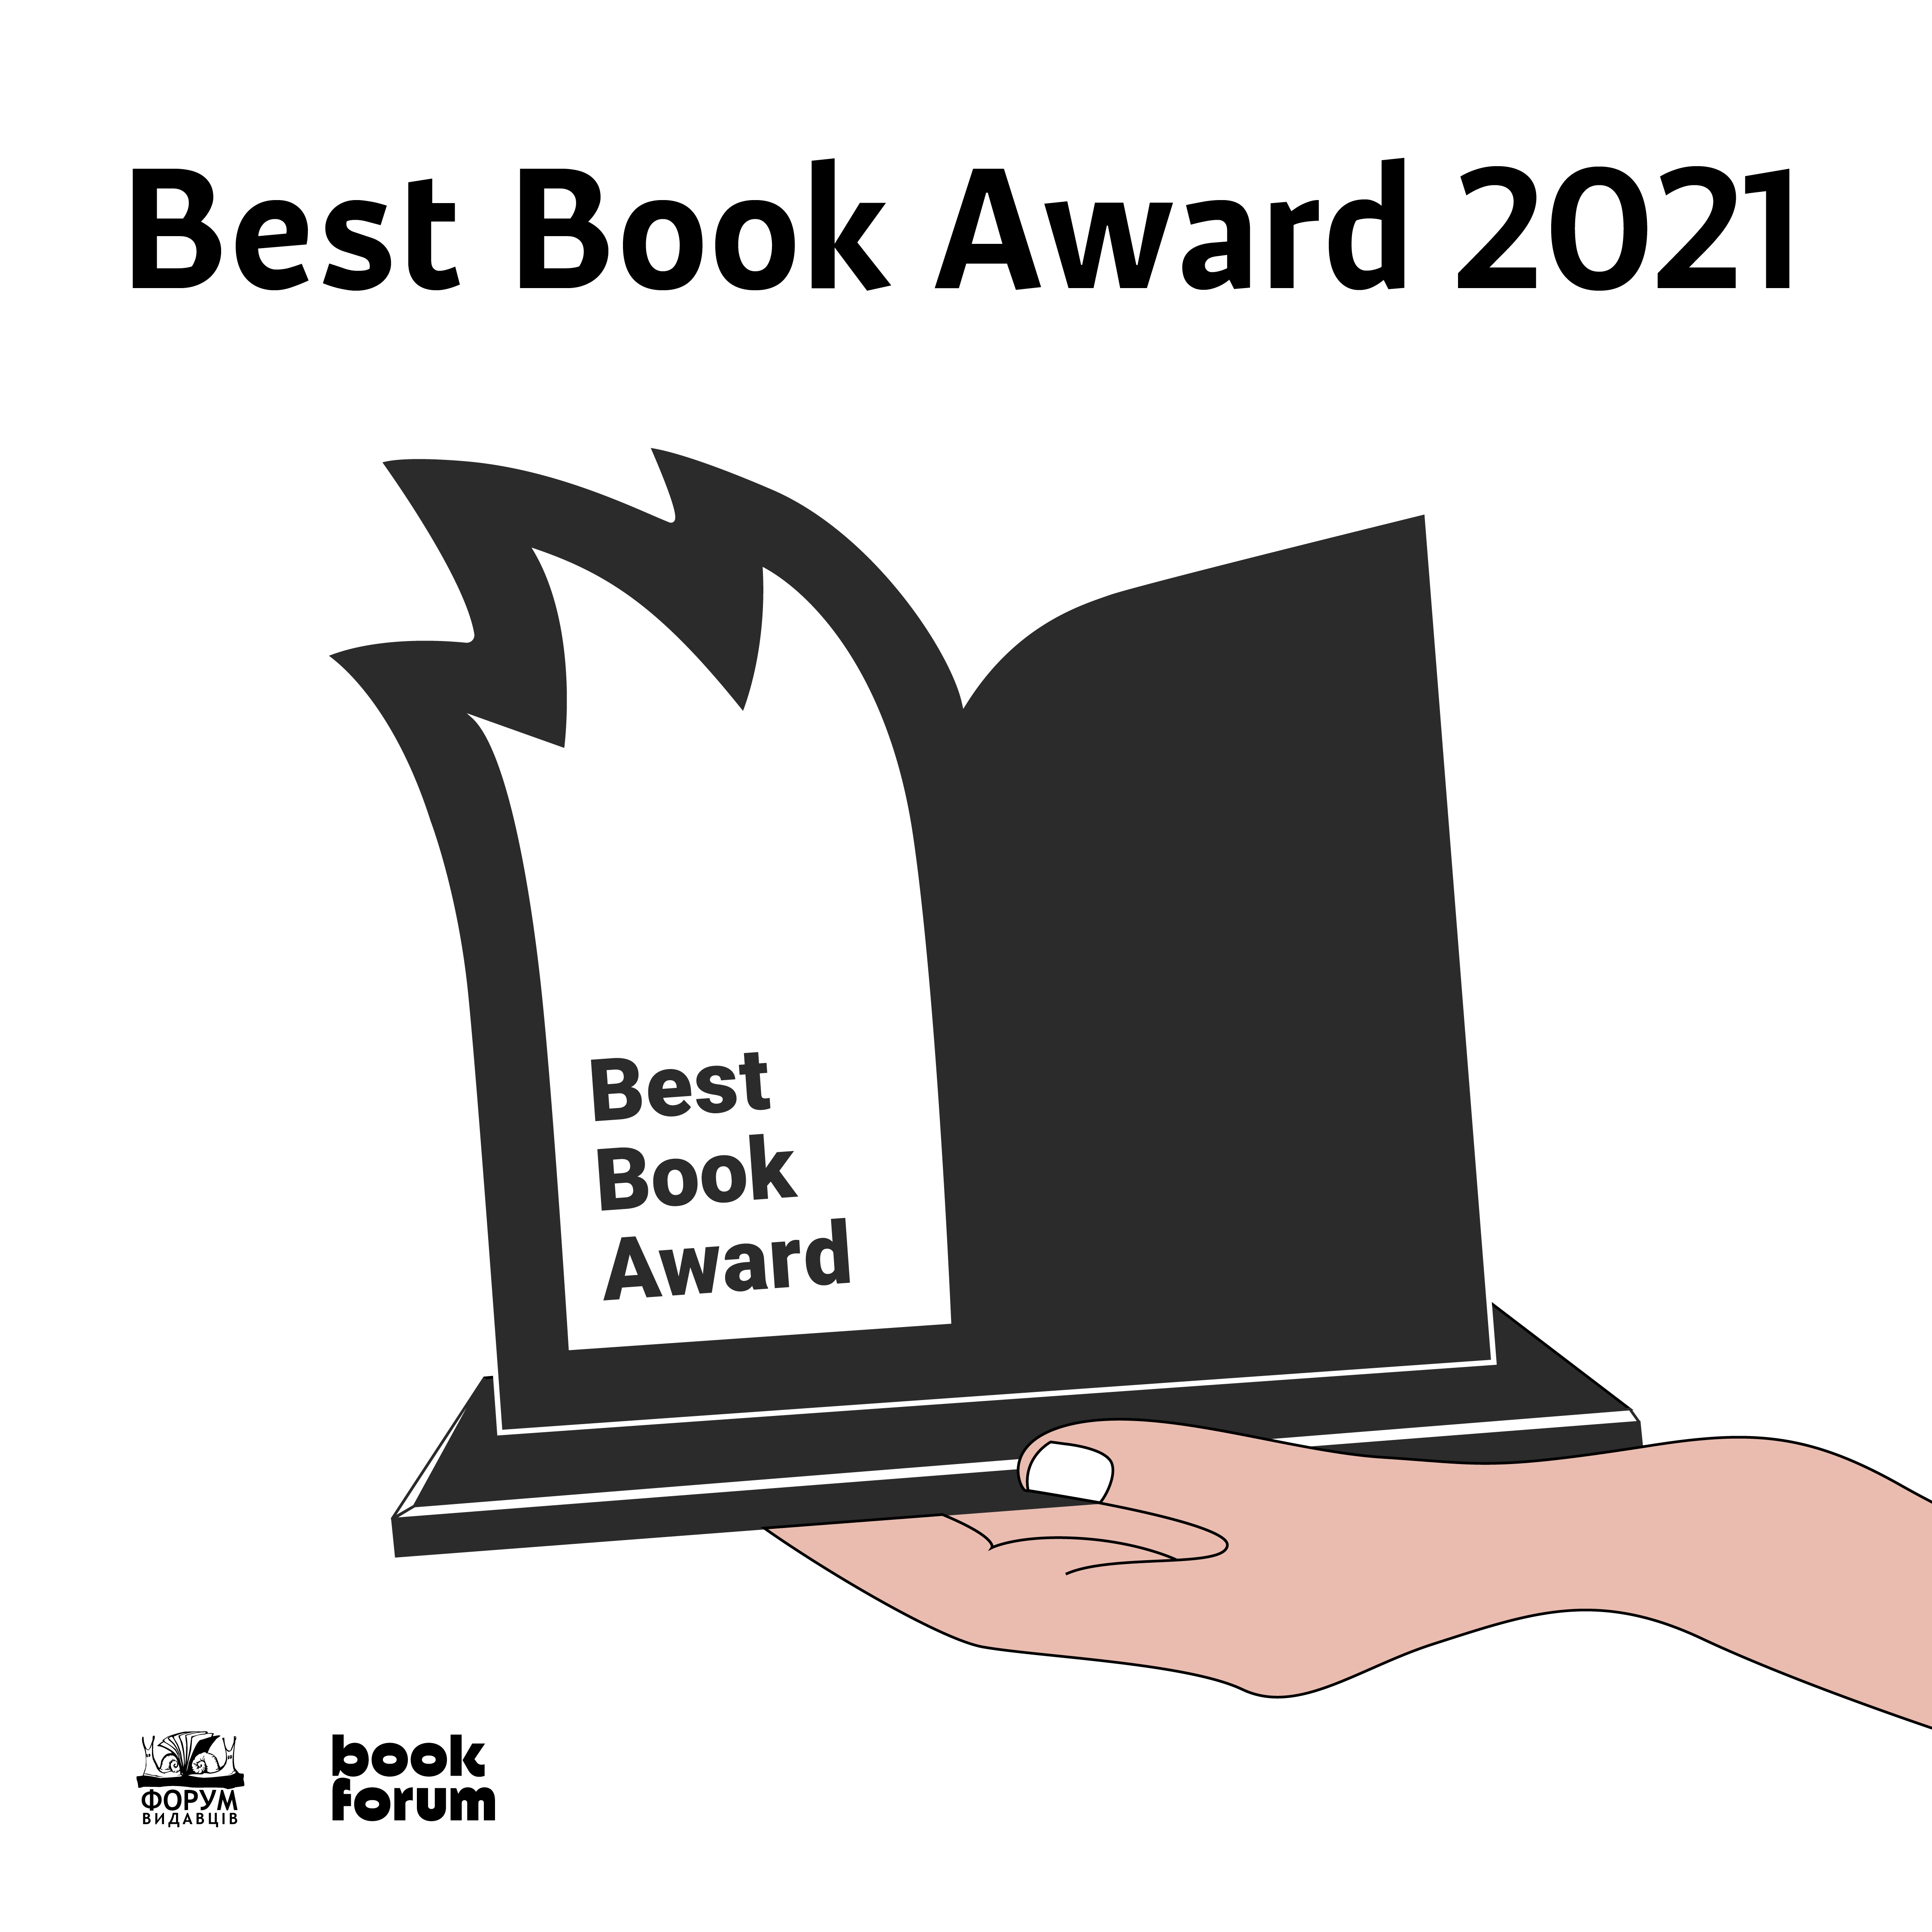 28 BookForum оголошує список книжок-номінантів на премію Best Book Award